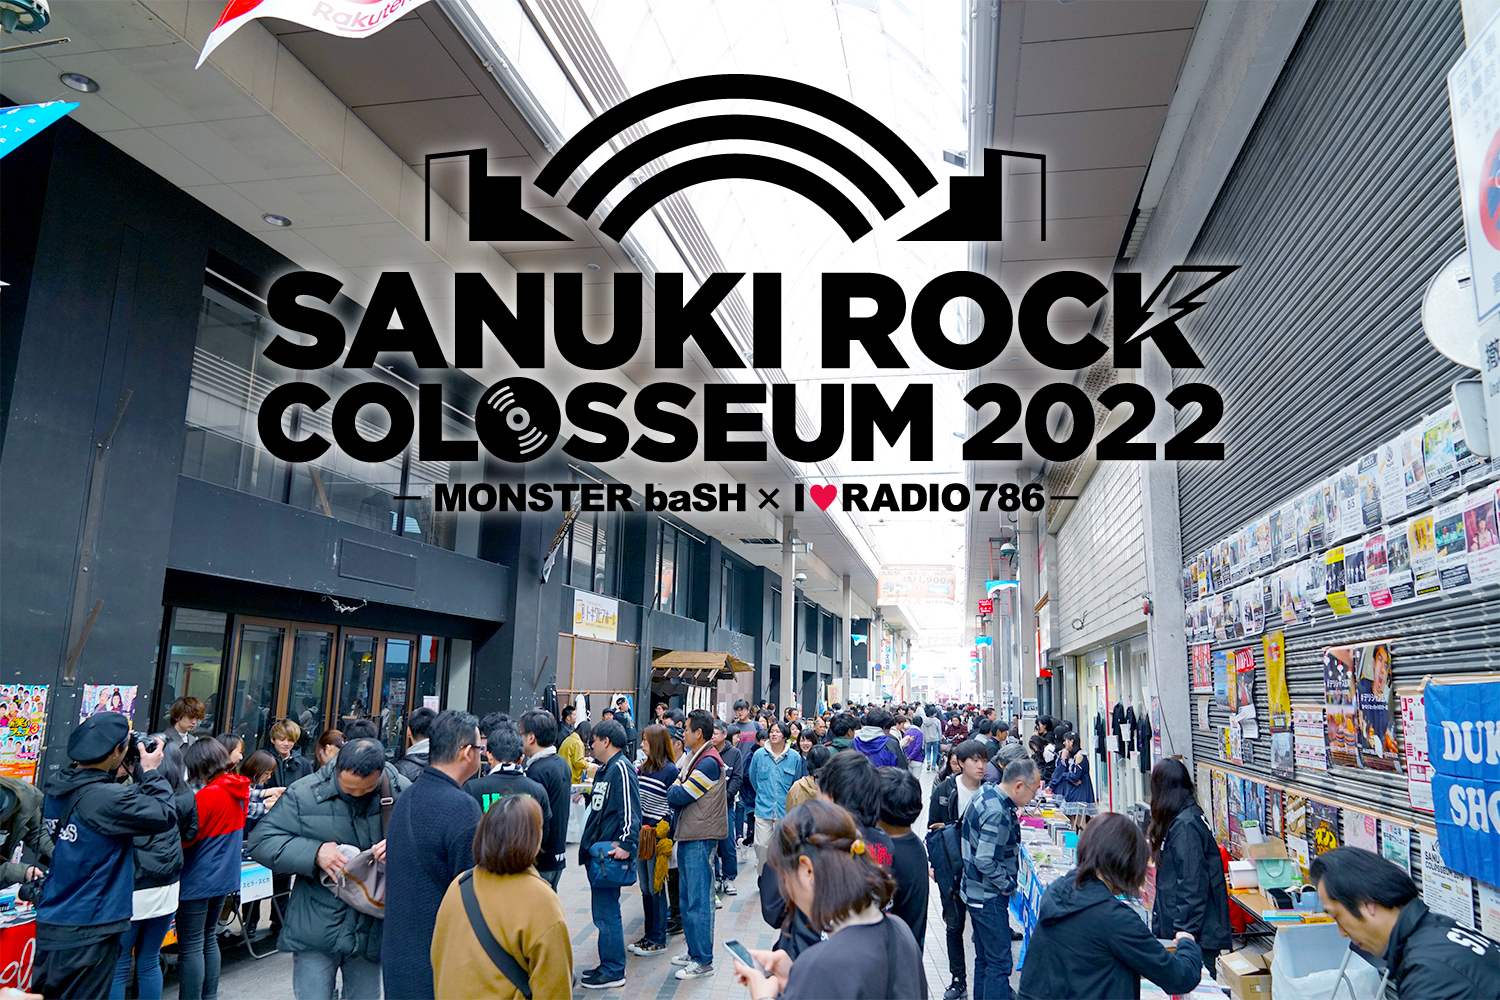 「四国愛に溢れた地域密着型フェス、サヌキロックのココに注目！『SANUKI ROCK COLOSSEUM 2022』3年ぶりの開催」のアイキャッチ画像